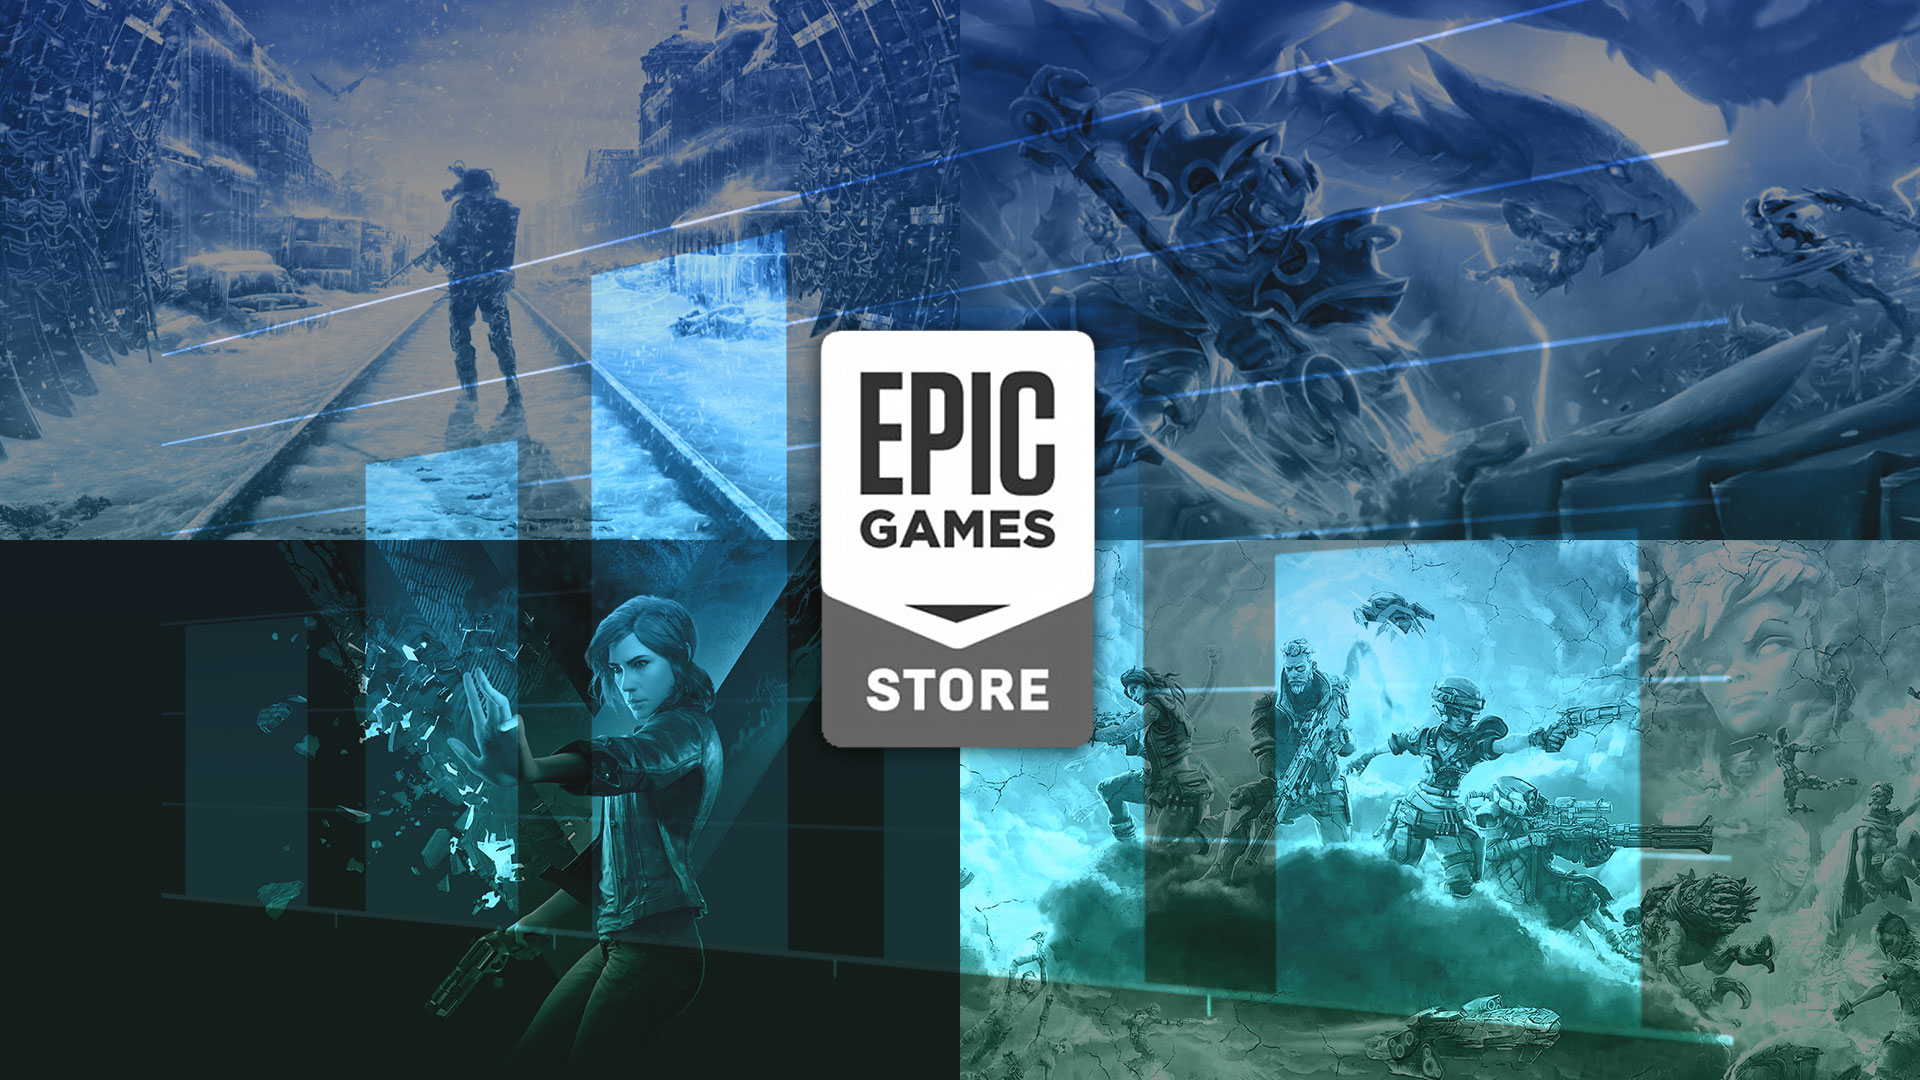 Epic Games 69 TL Değerindeki Oyunu Bedava Veriyor!